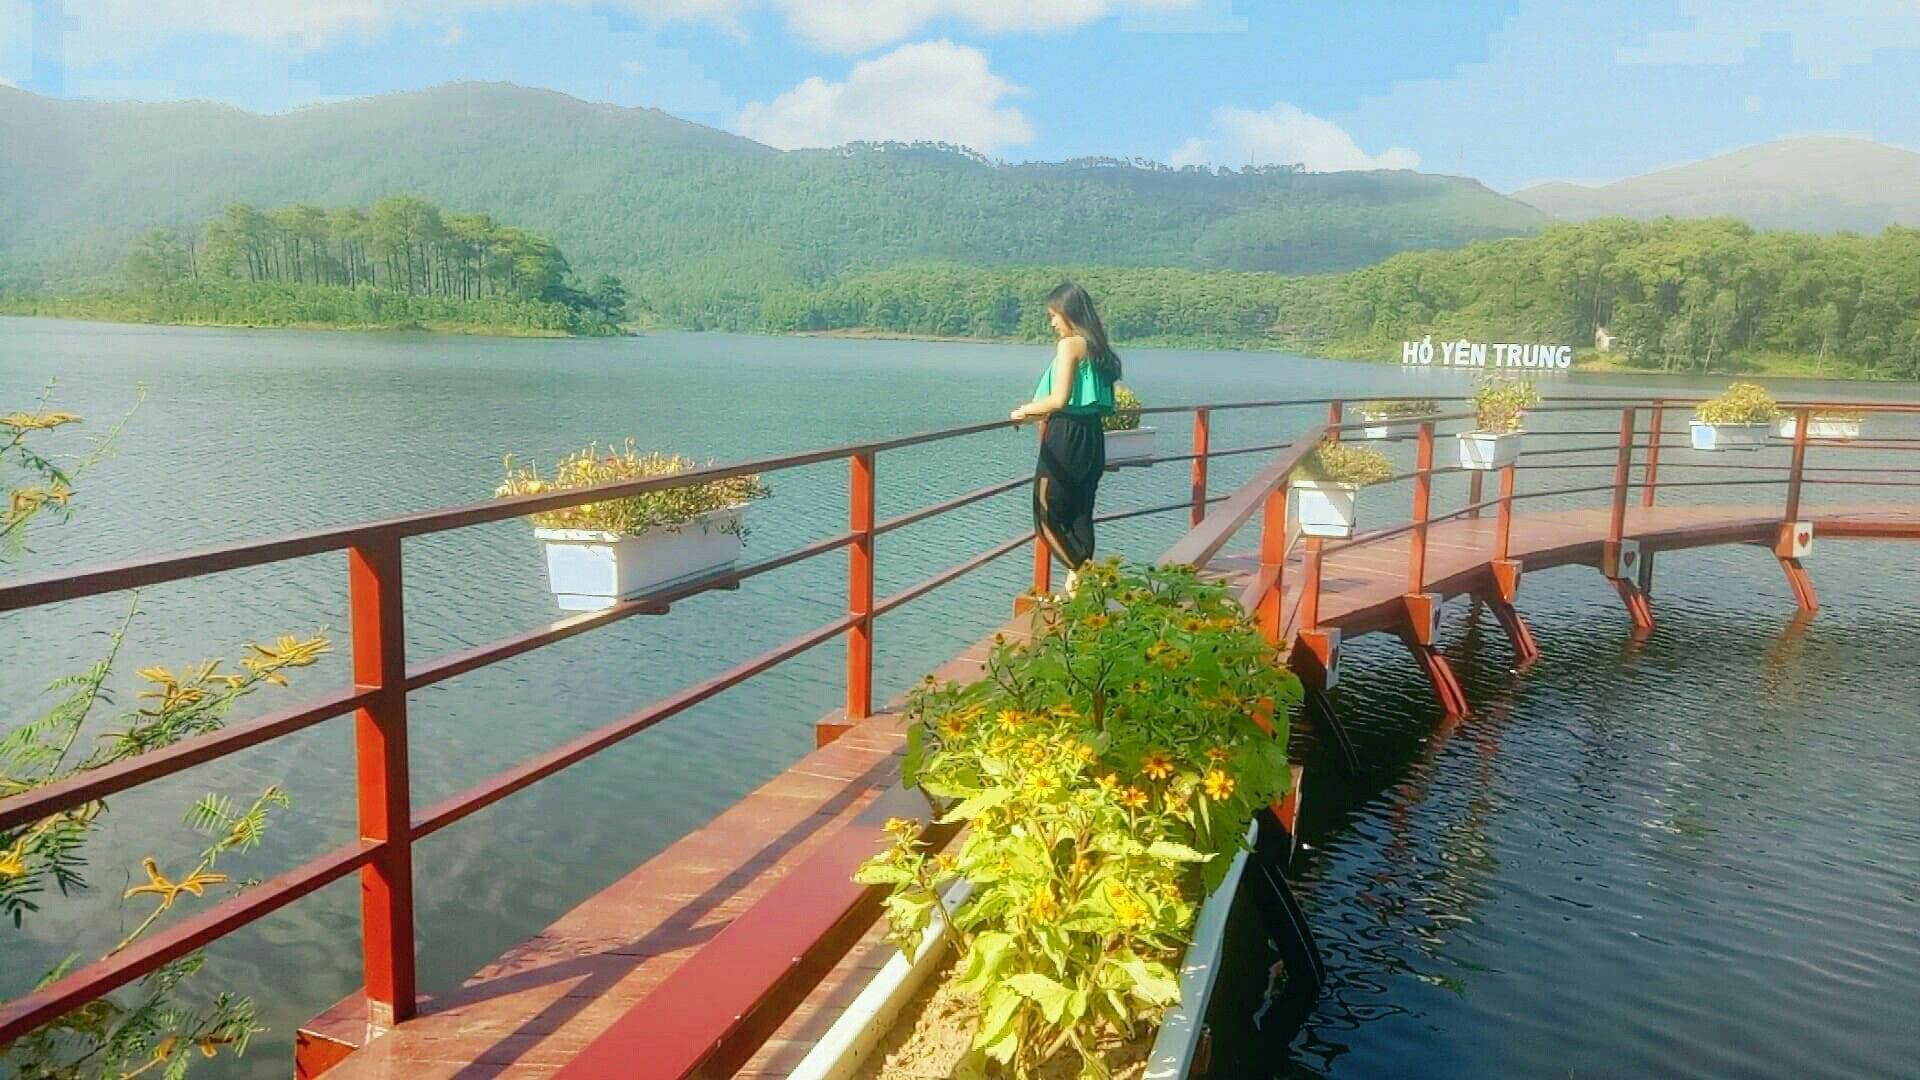 Cầu trên hồ Yên Trung